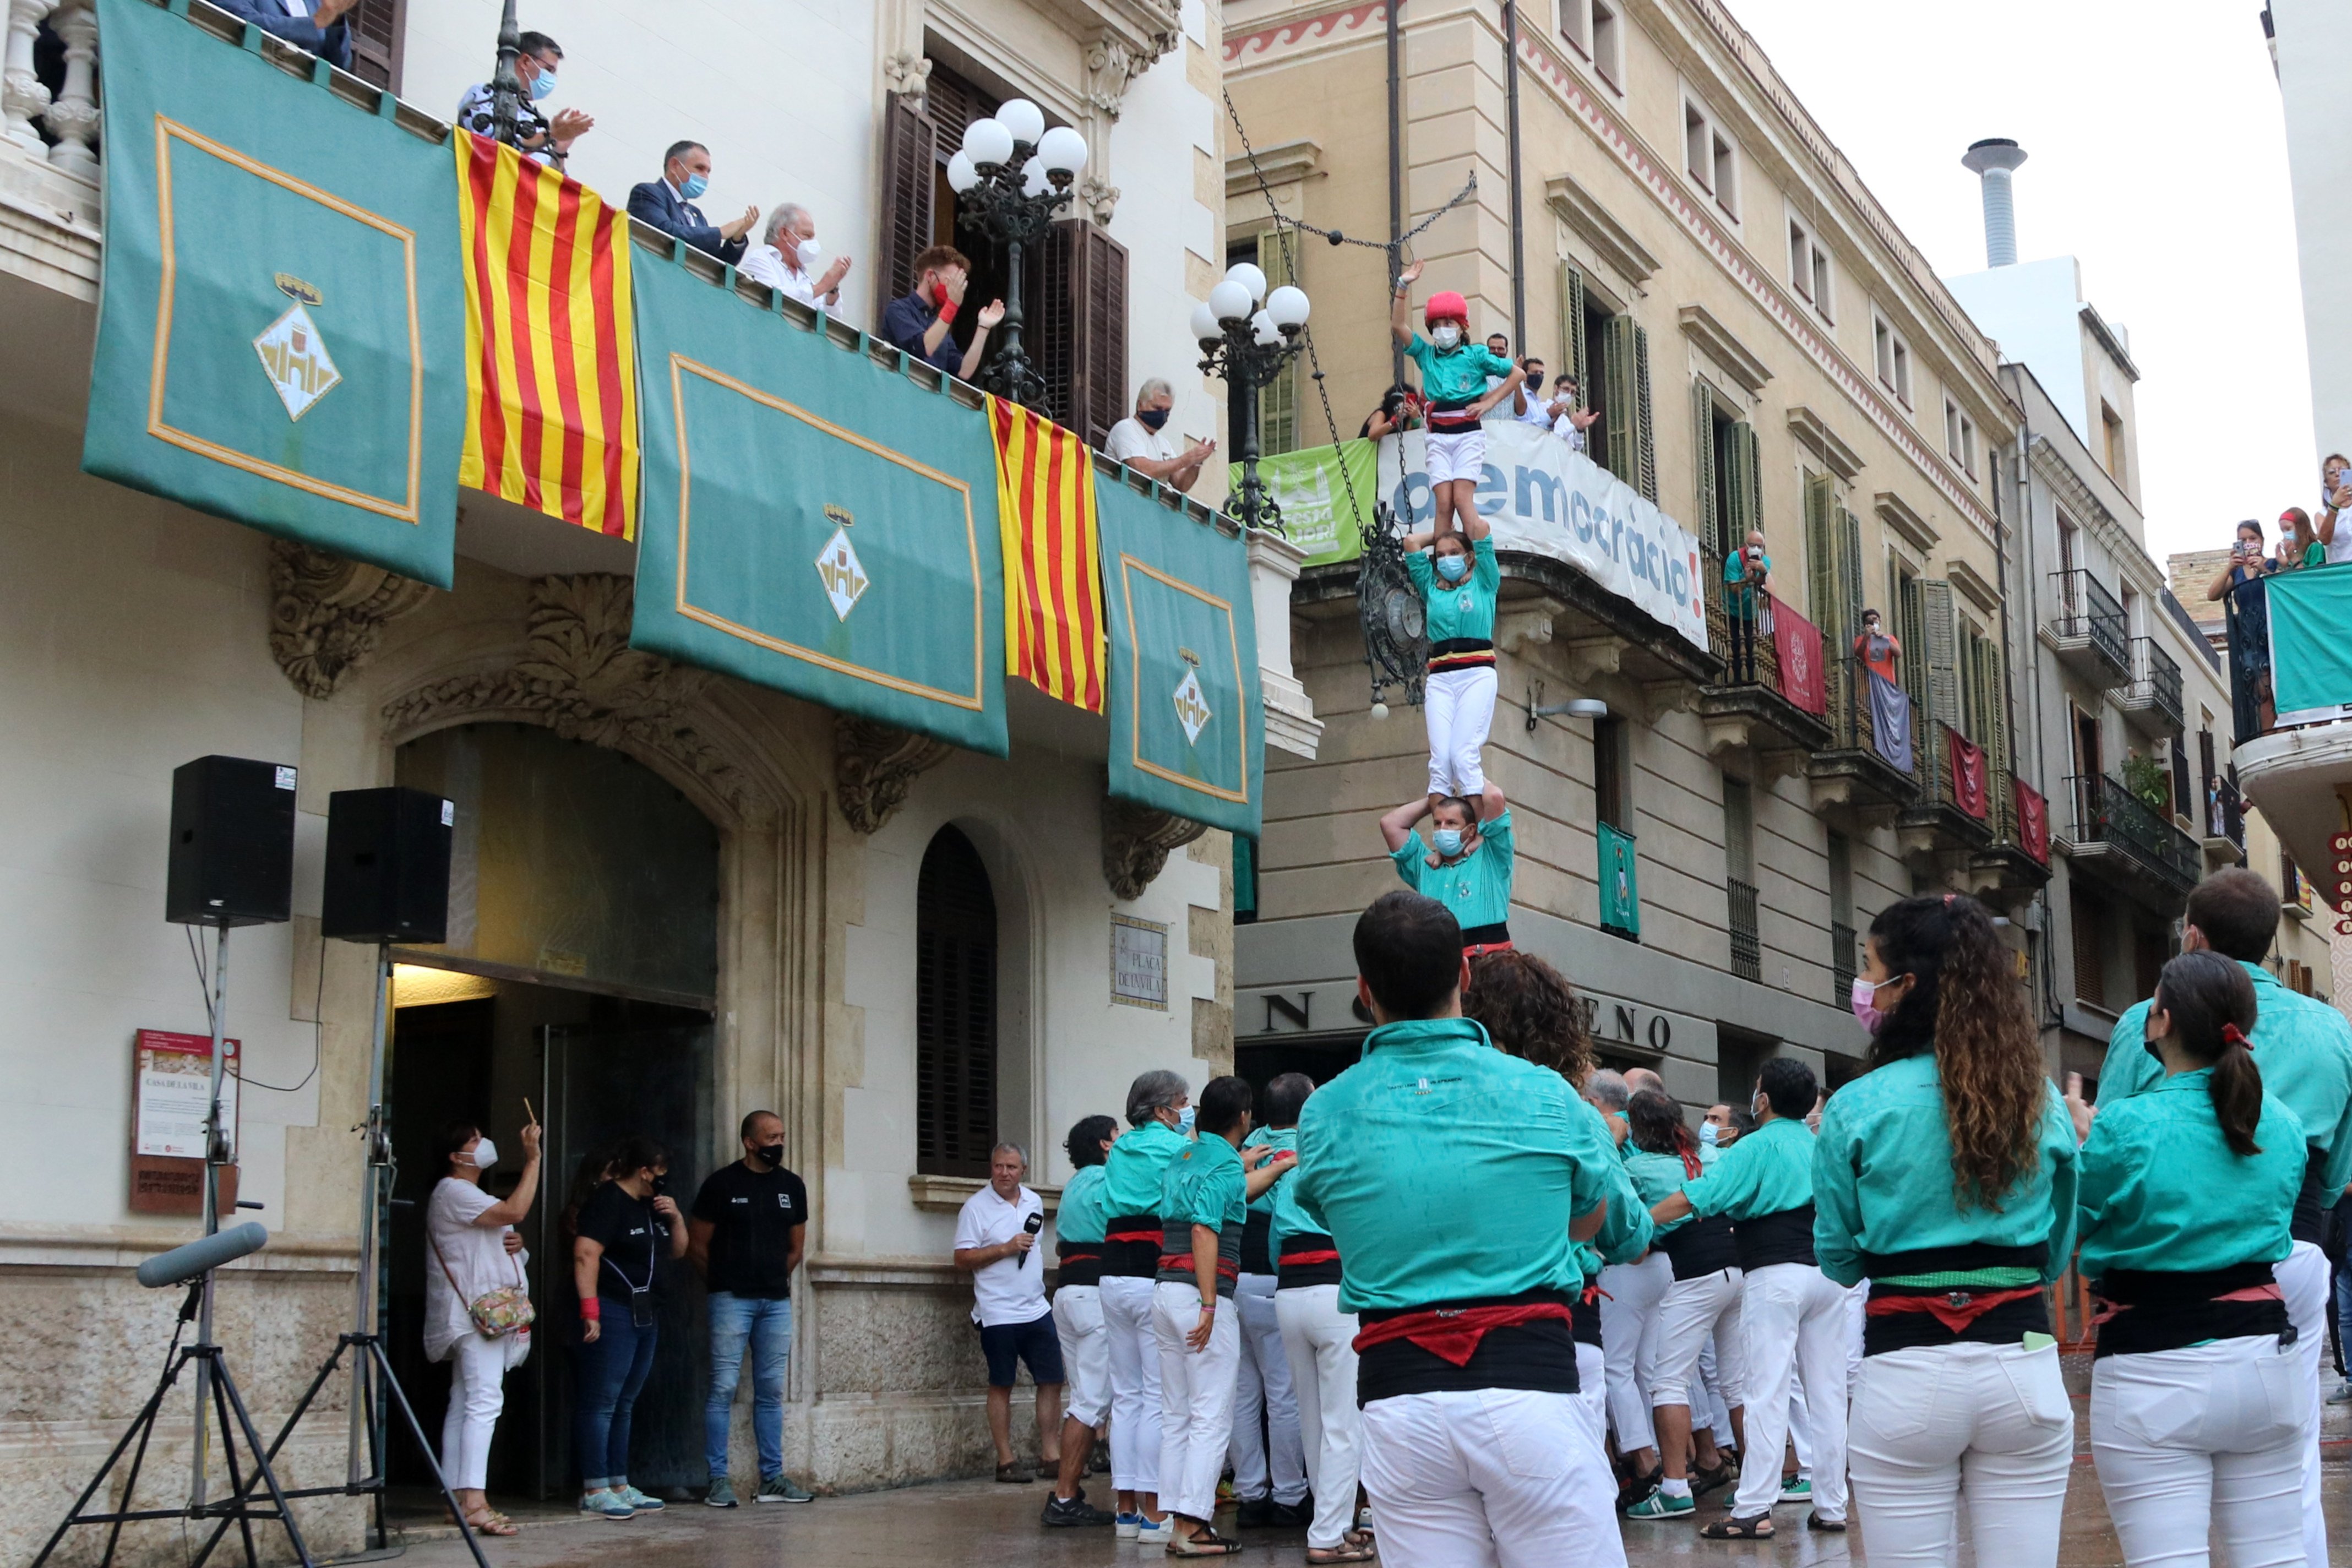 Castellers exigen un protocolo covid único tras la suspensión de Sant Fèlix